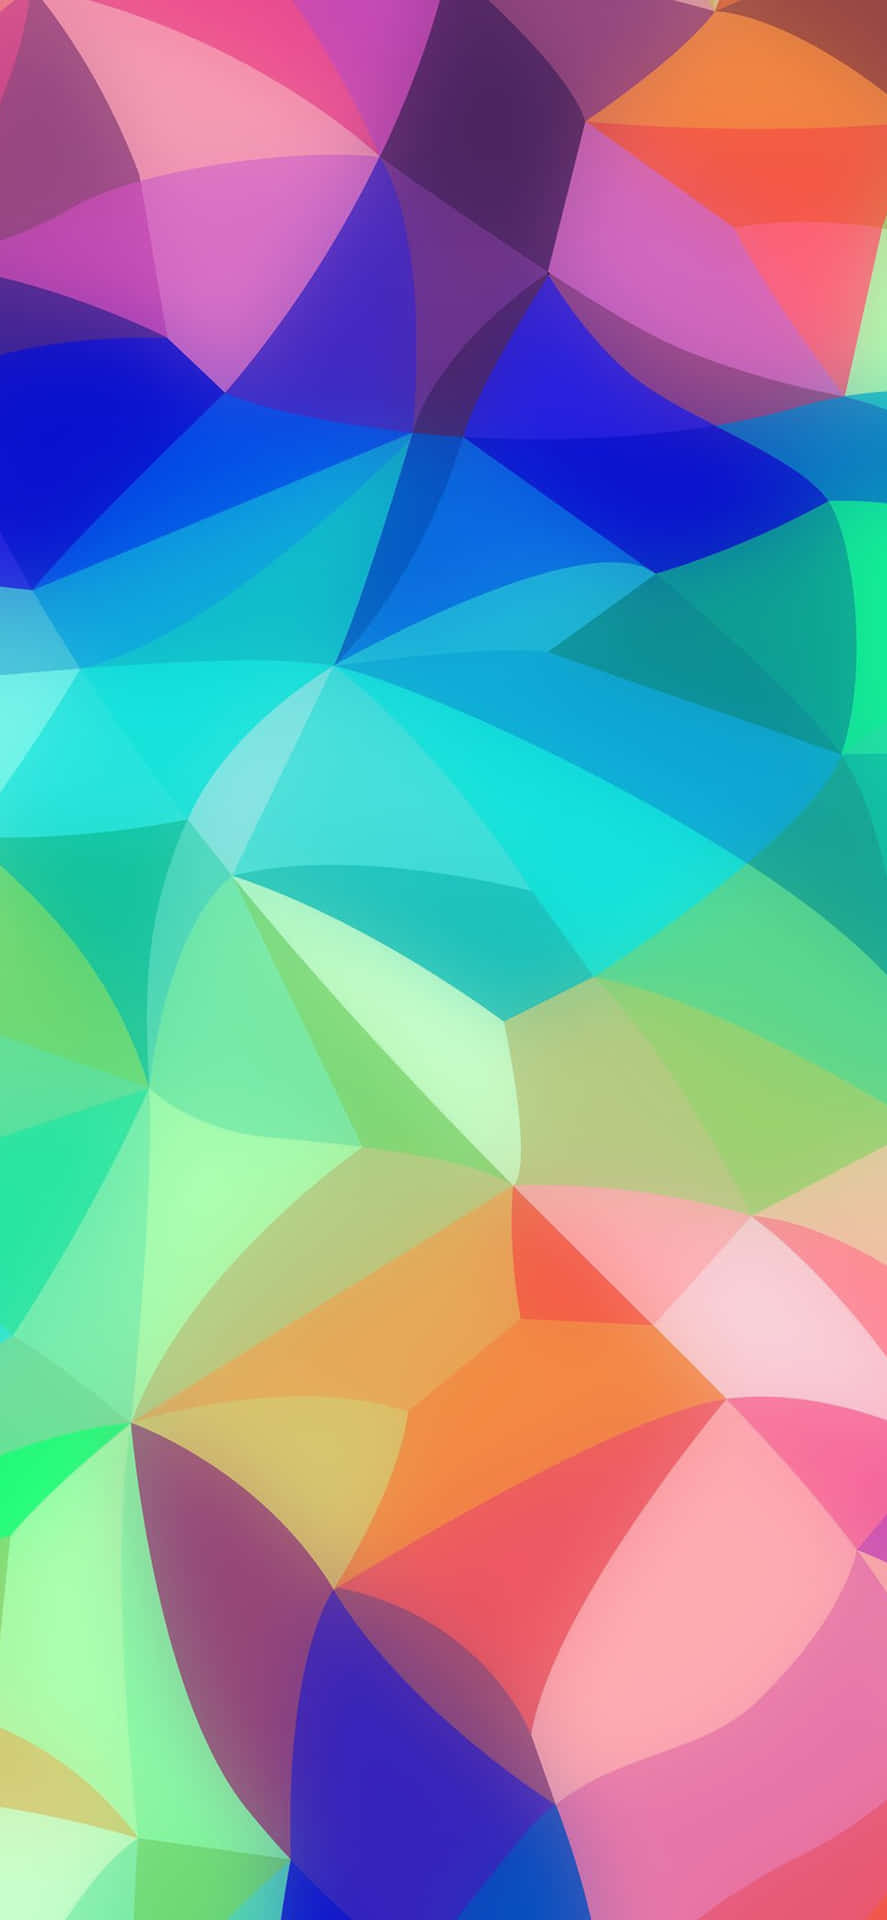 Verleihensie Ihrem Tag Mit Dem Neuen Pastel Rainbow Iphone Hintergrund Farbe. Wallpaper